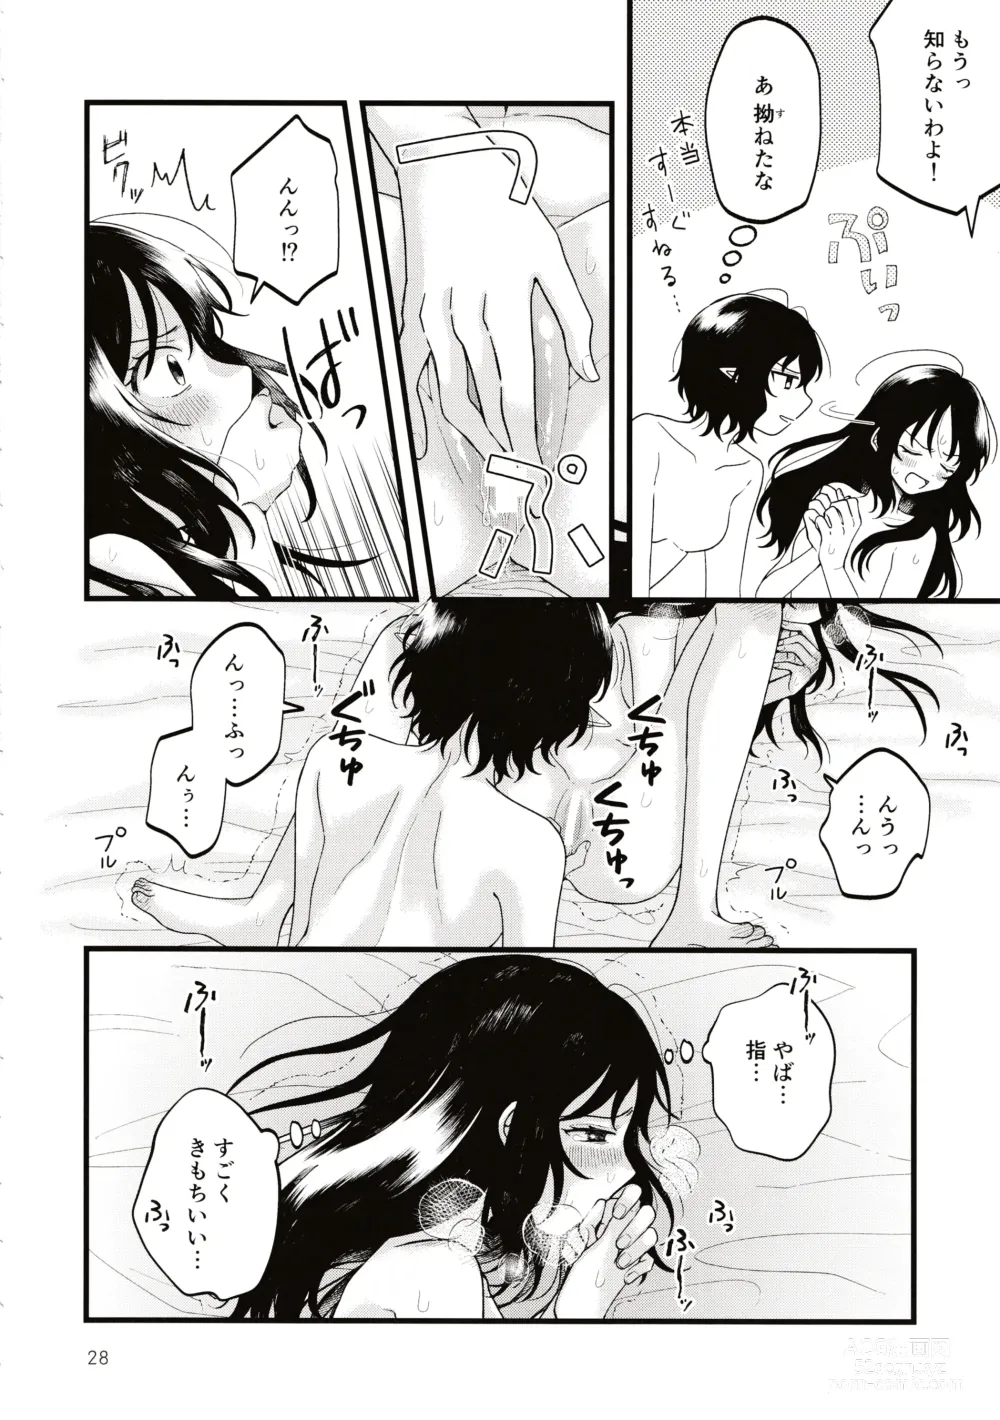 Page 27 of doujinshi Rubeus no Kankai